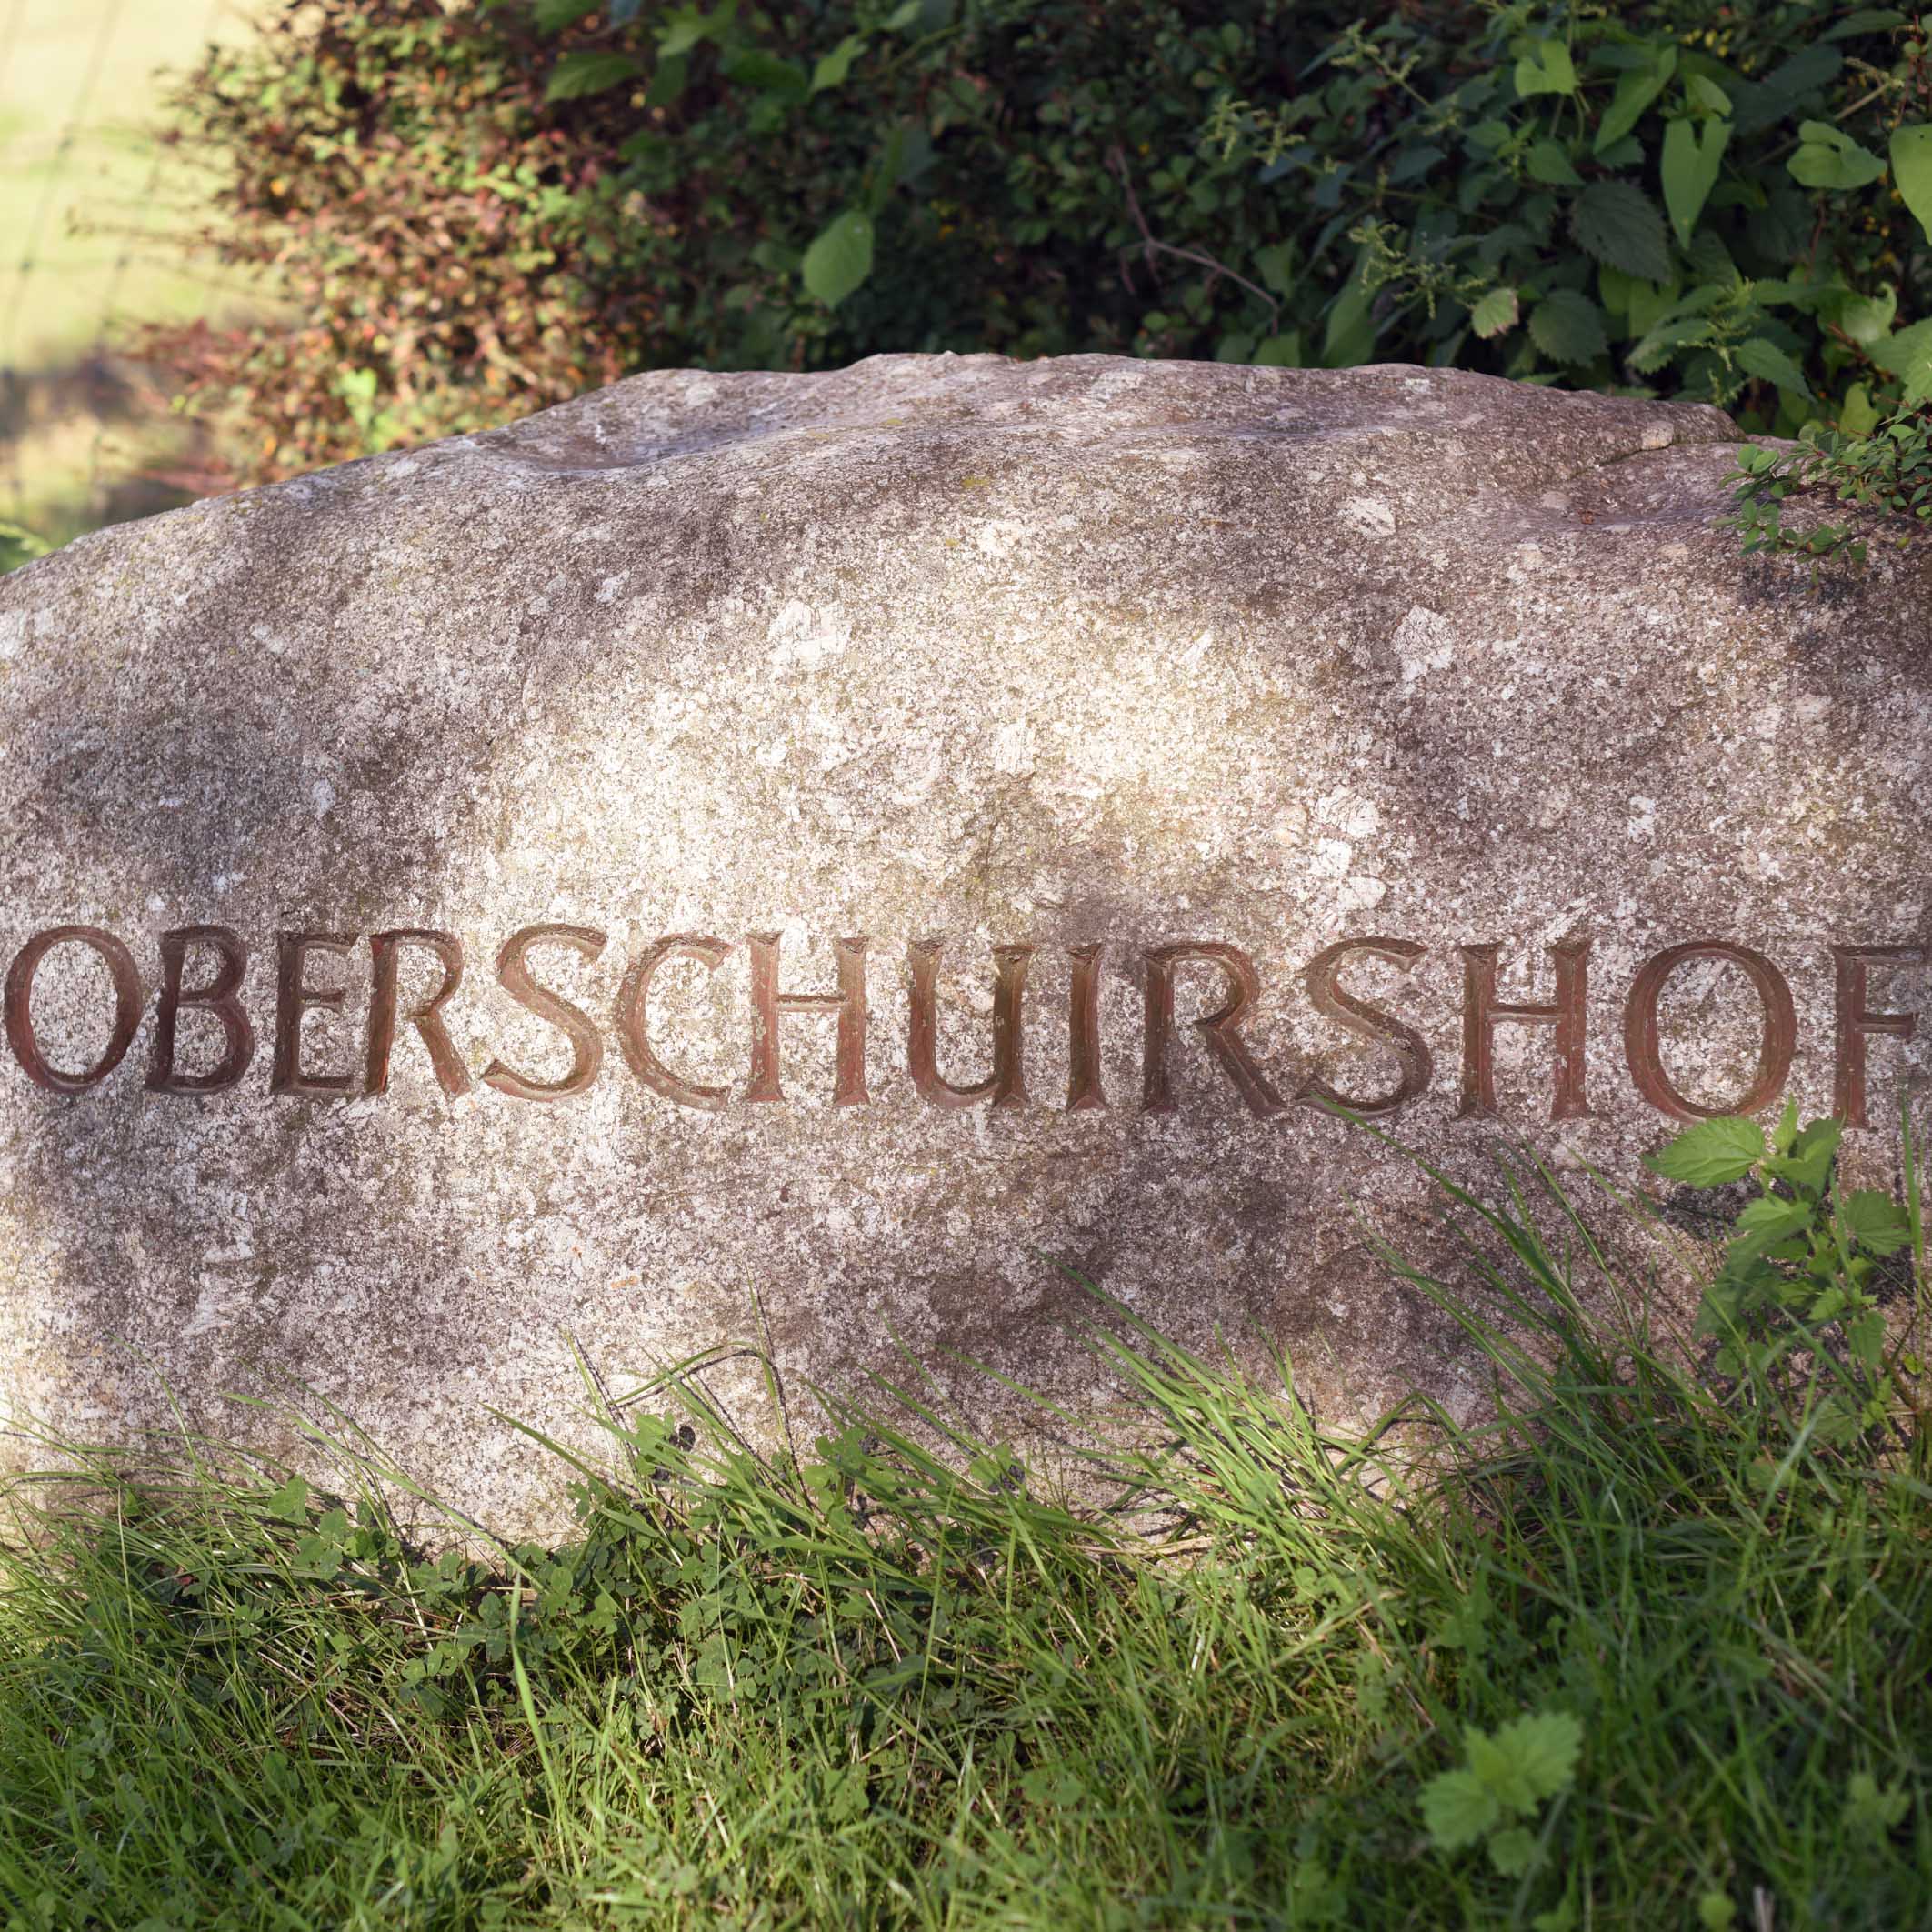 Oberschuirshof_(2)